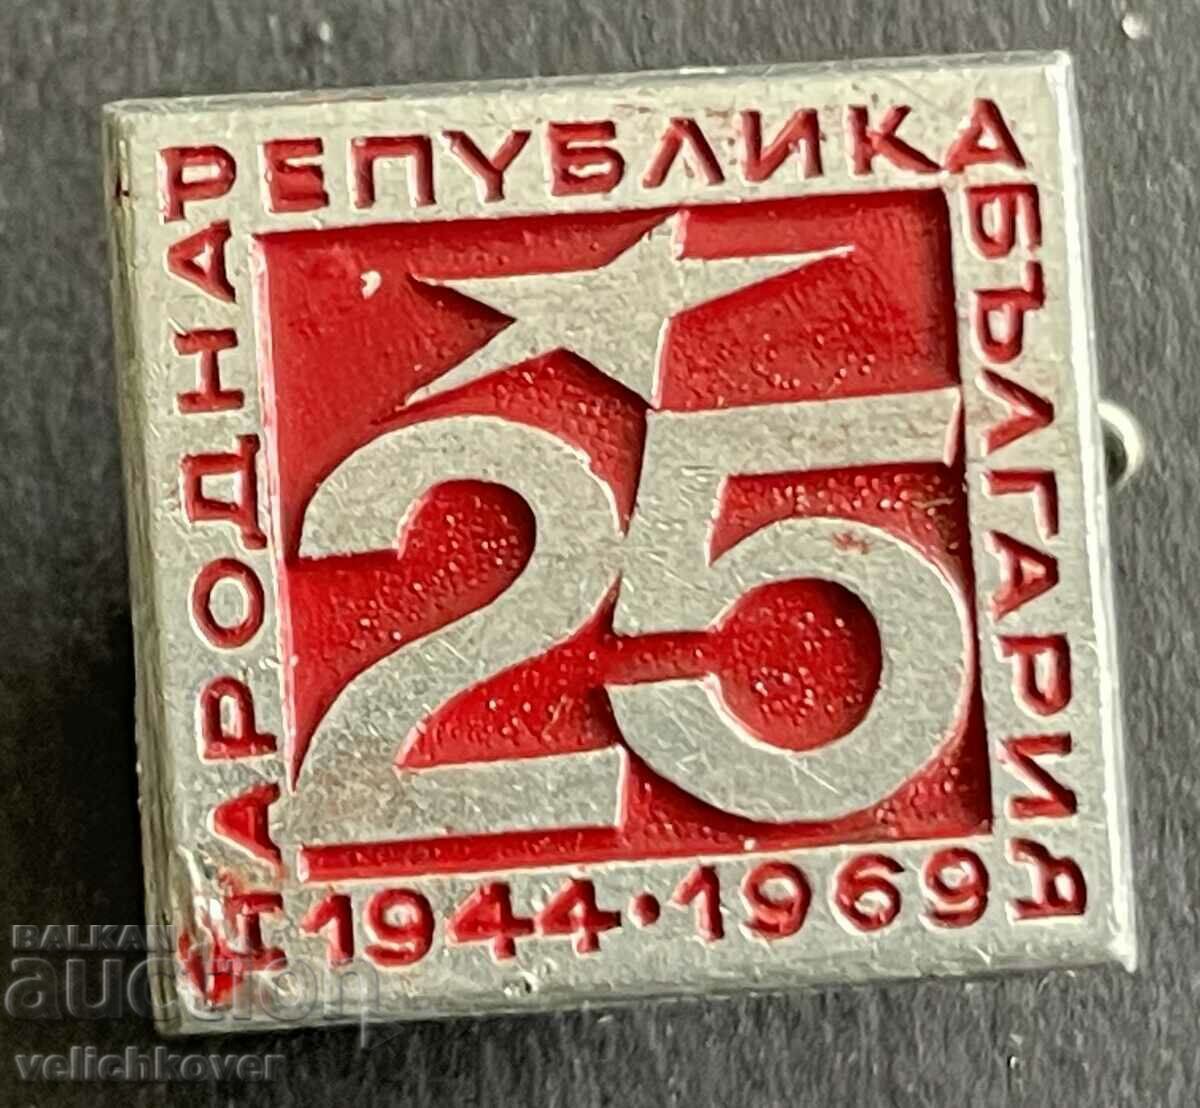 37589 Βουλγαρία υπογράφει 25 χρόνια. Λαϊκή Δημοκρατία της Βουλγαρίας 1969